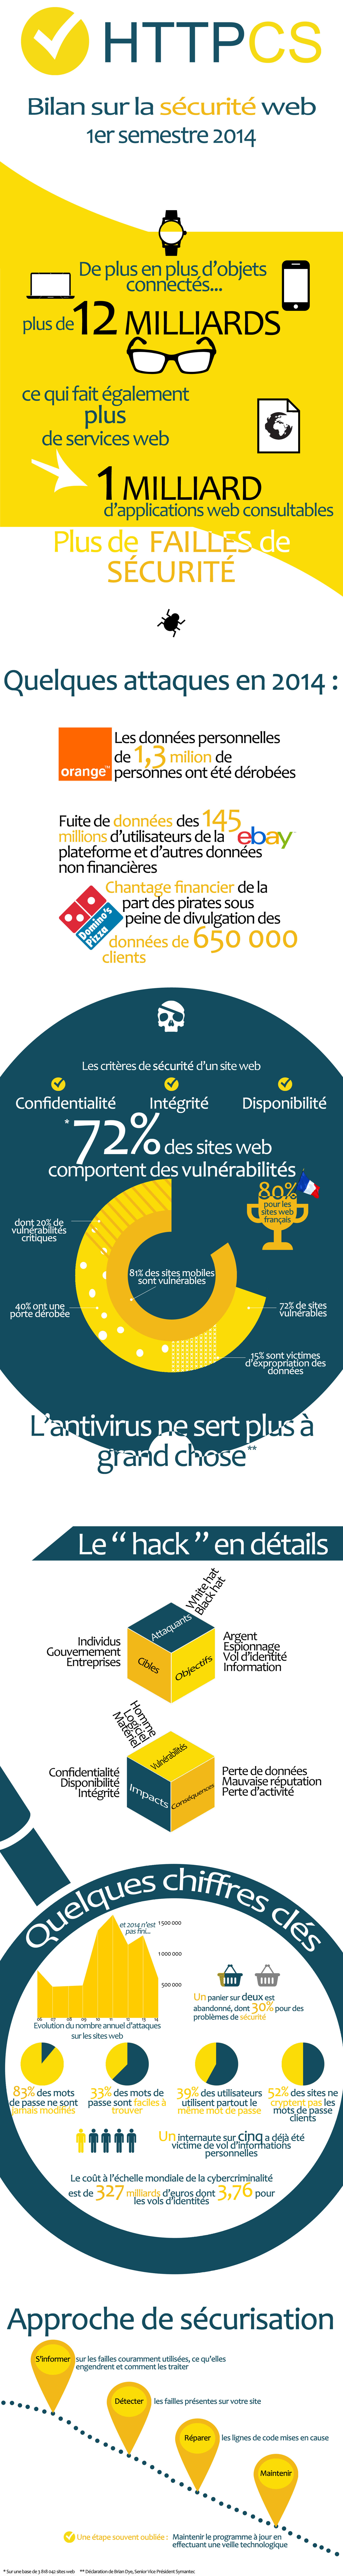 attaques web 2014